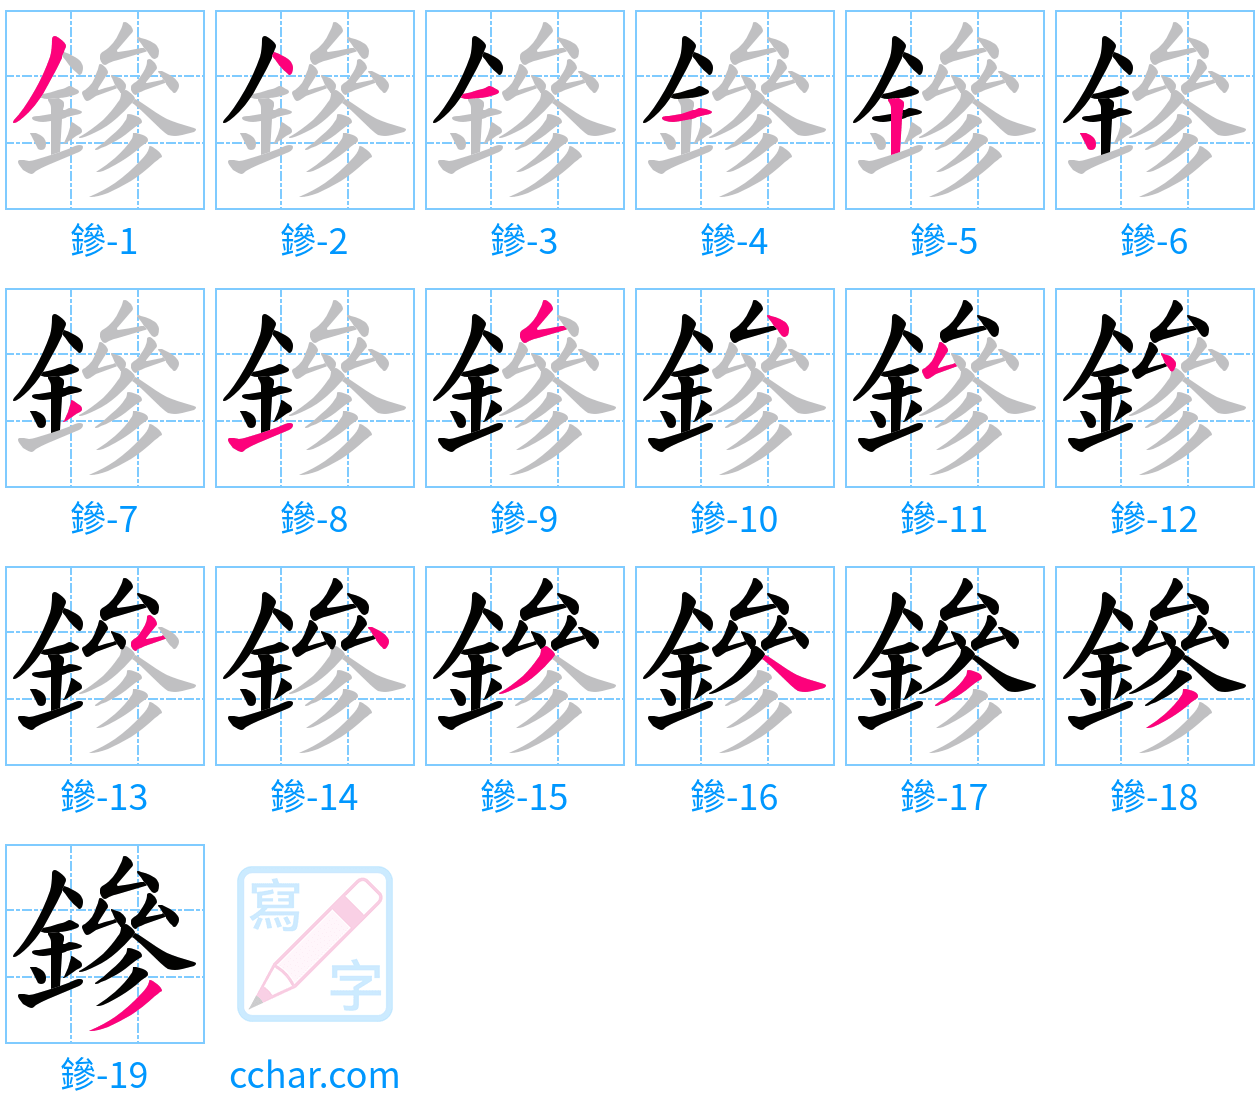 鏒 stroke order step-by-step diagram